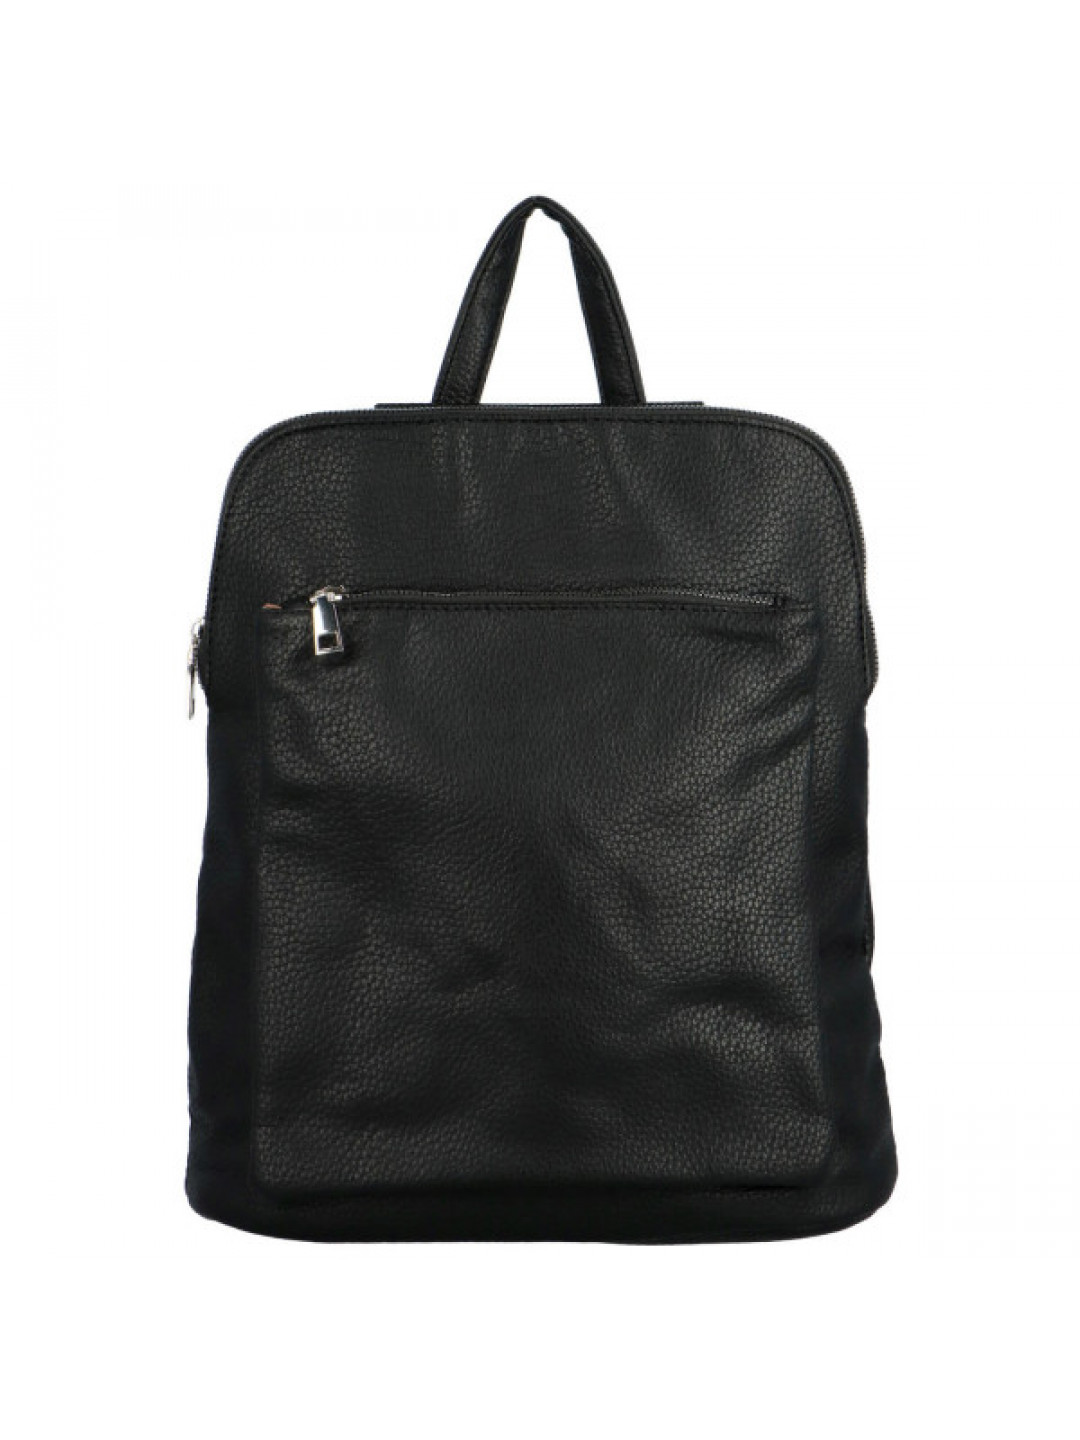 Dámský kabelko batoh černý – MaxFly Candys